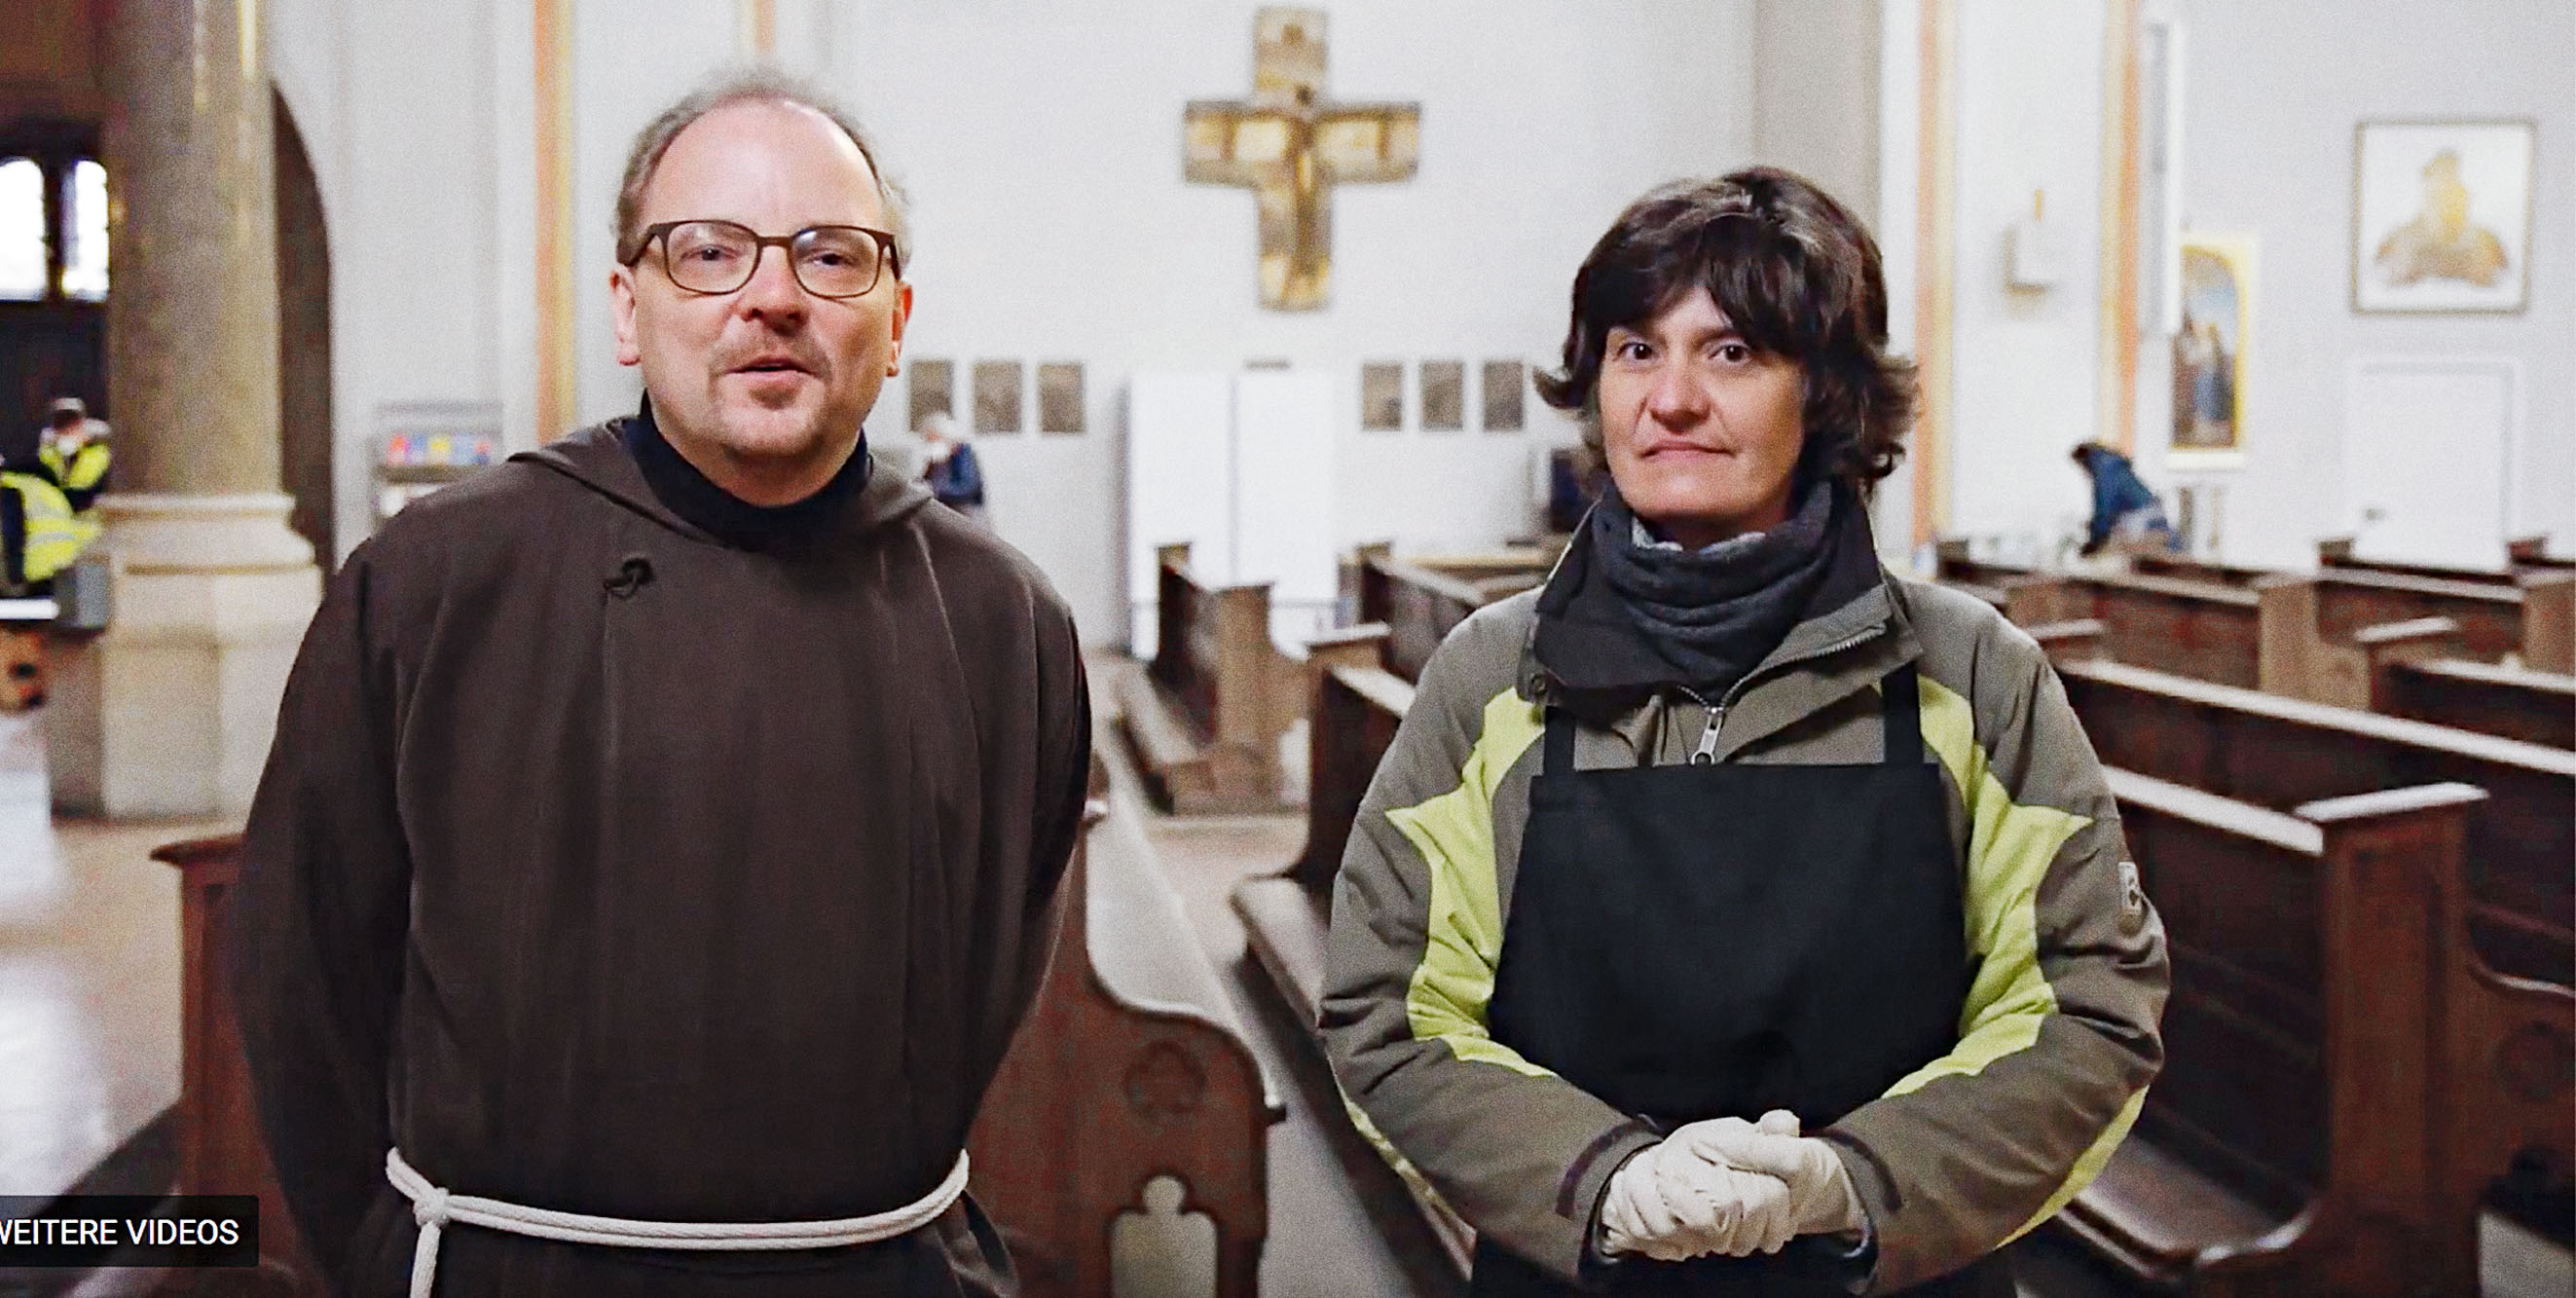 Auf dem Foto sieht man Bruder Bernd Kober, Leiter des Pfarrverbands Isarvorstadt. Neben ihm steht Yvonne Möller. Sie arbeitet für den Caritasverband und hat die Antonius-Küche aufgebaut.